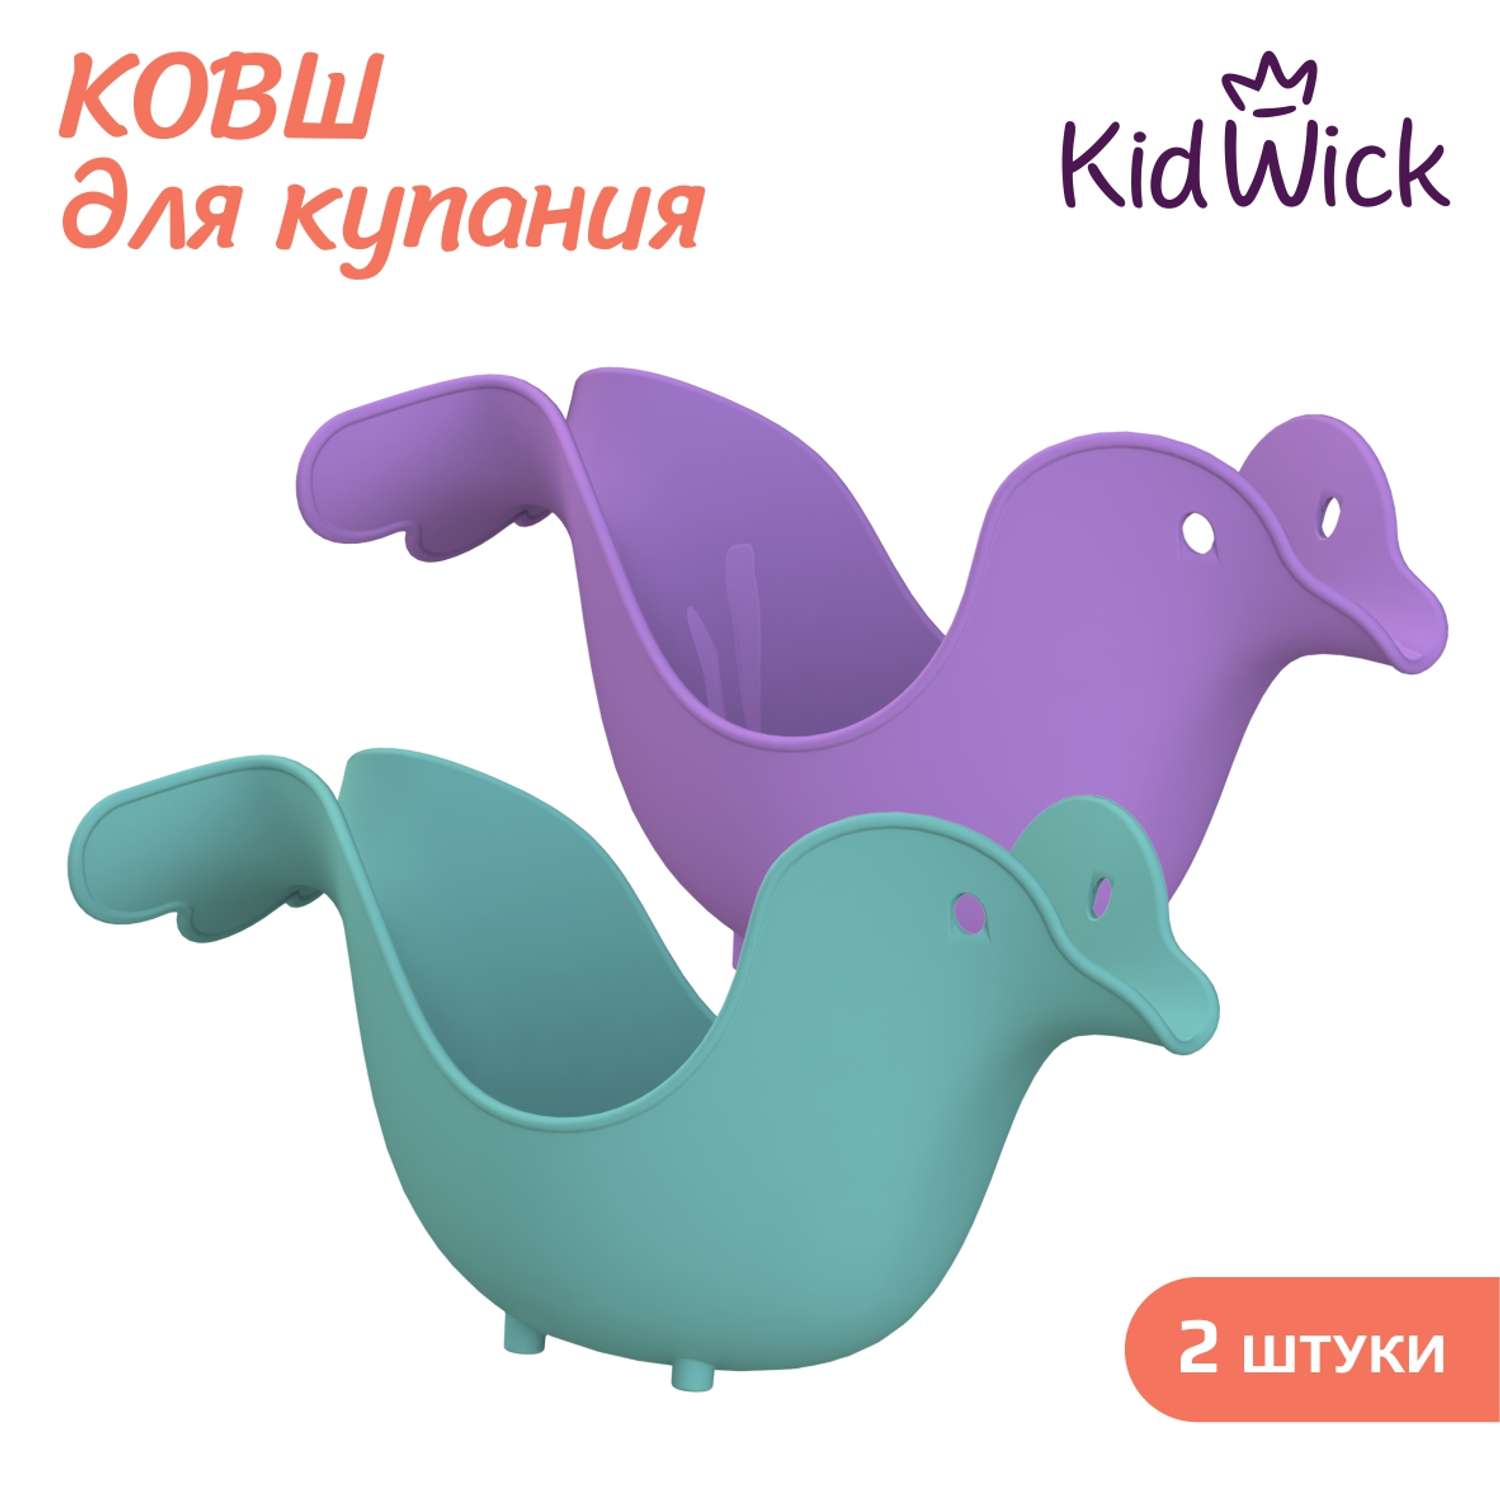 Набор ковшей для купания KidWick Птичка 2 штуки бирюзовый и фиолетовый - фото 1